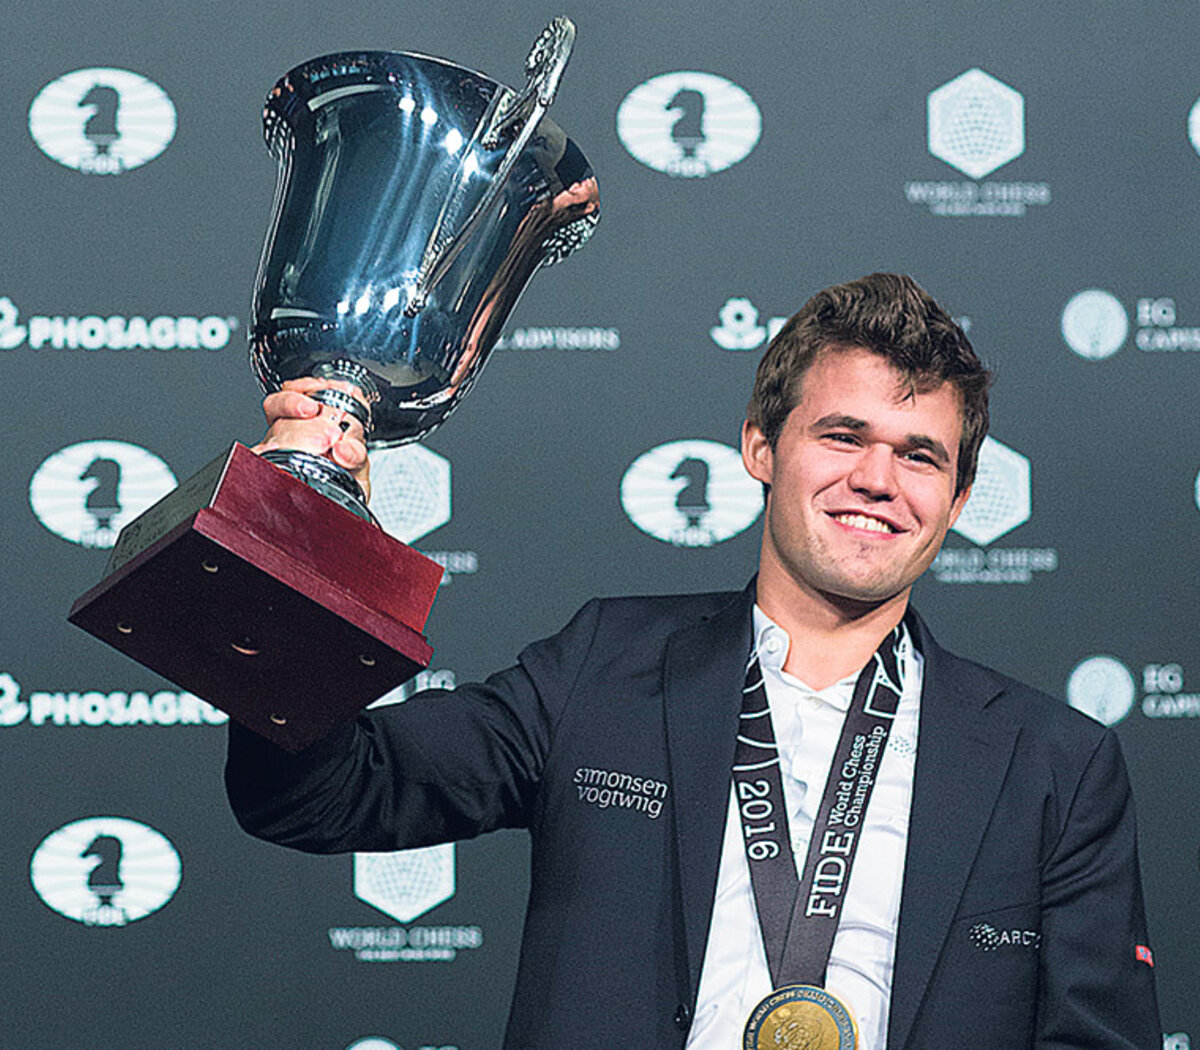 La fortuna sonríe a Carlsen y se clasifica para la final